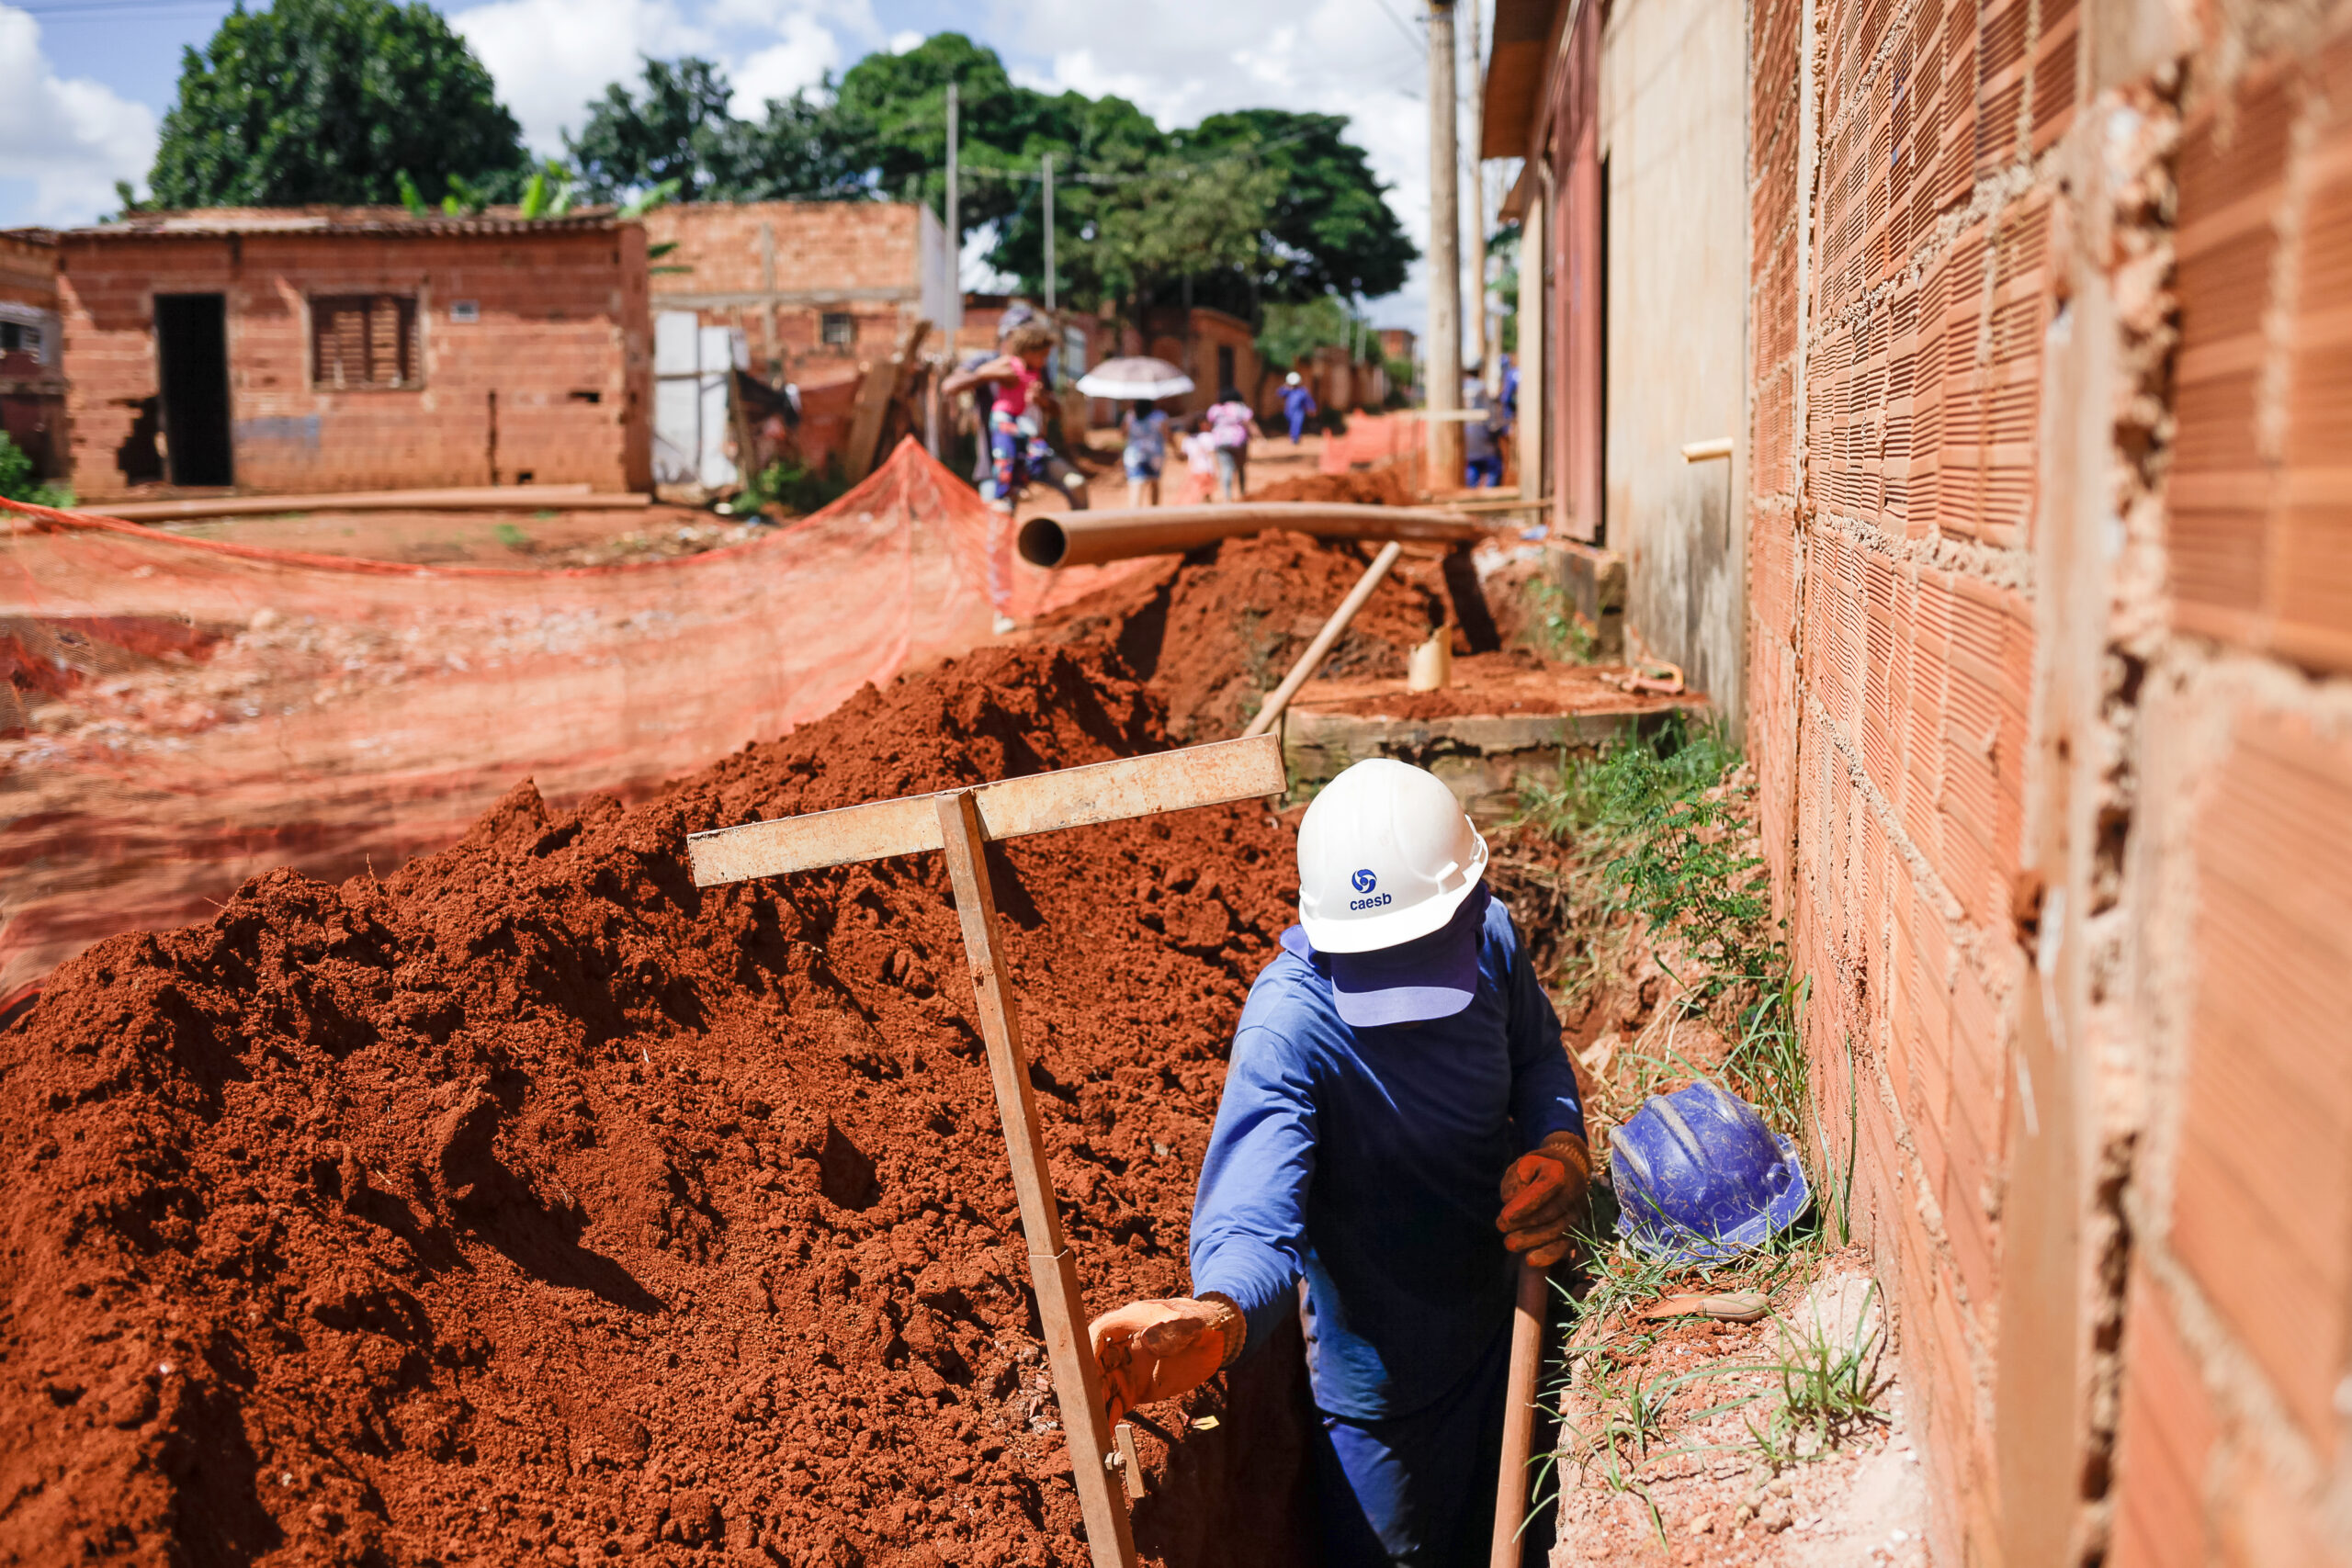 Equipes trabalham para garantir o abastecimento da população local; investimento em todo o sistema supera R$ 16 milhões | Foto: Cristiano Carvalho/Caesb